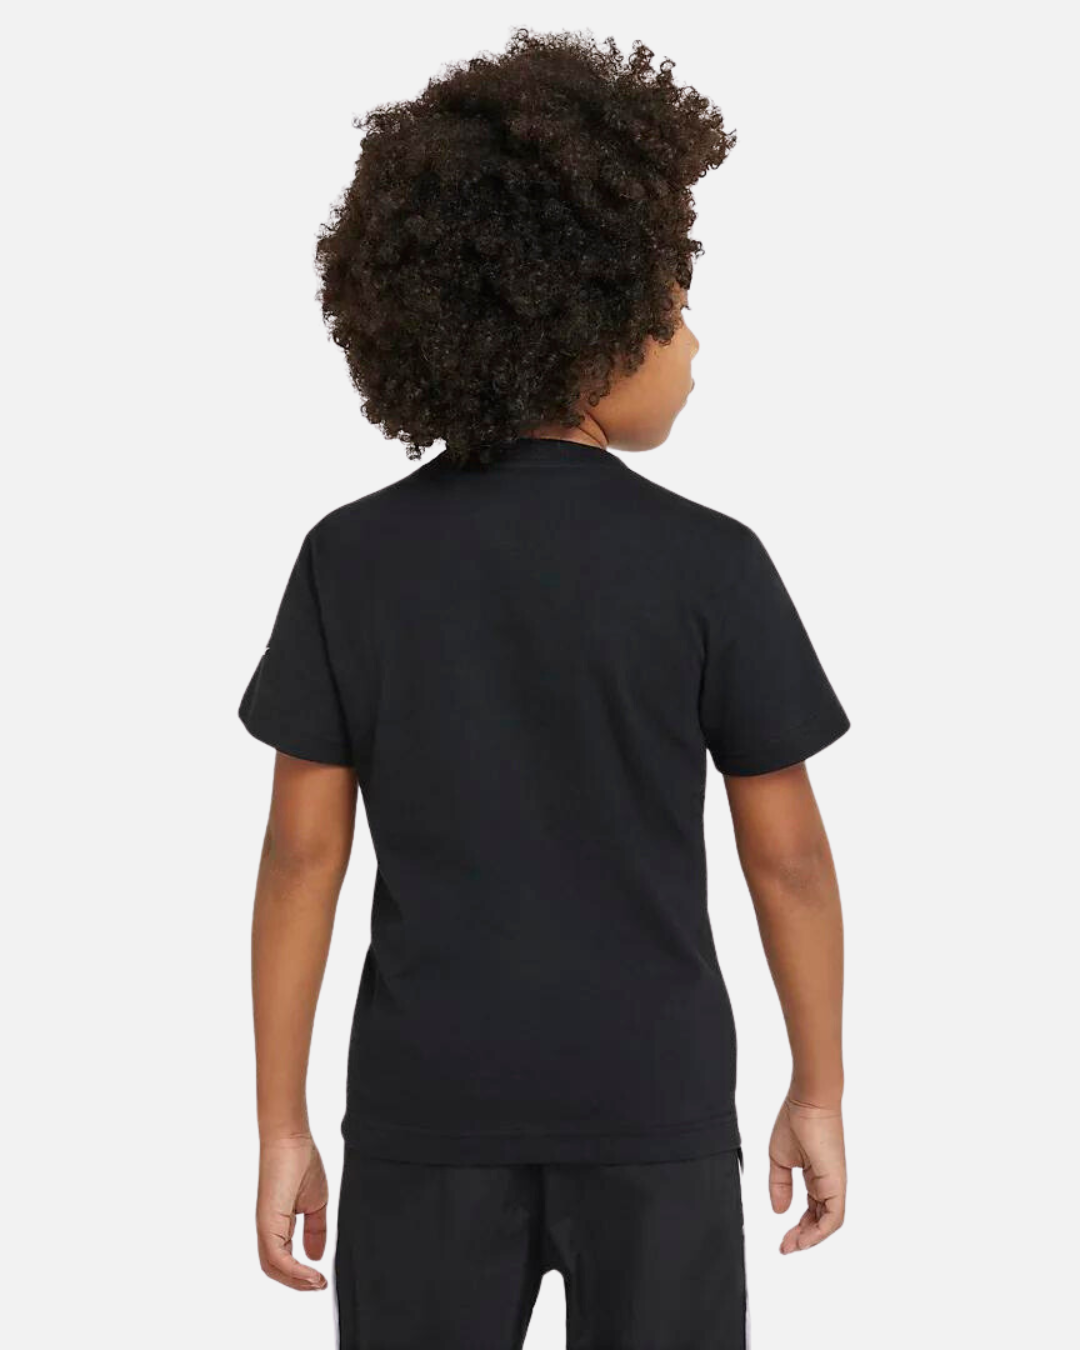 Maglietta Nike Air per bambini - nera